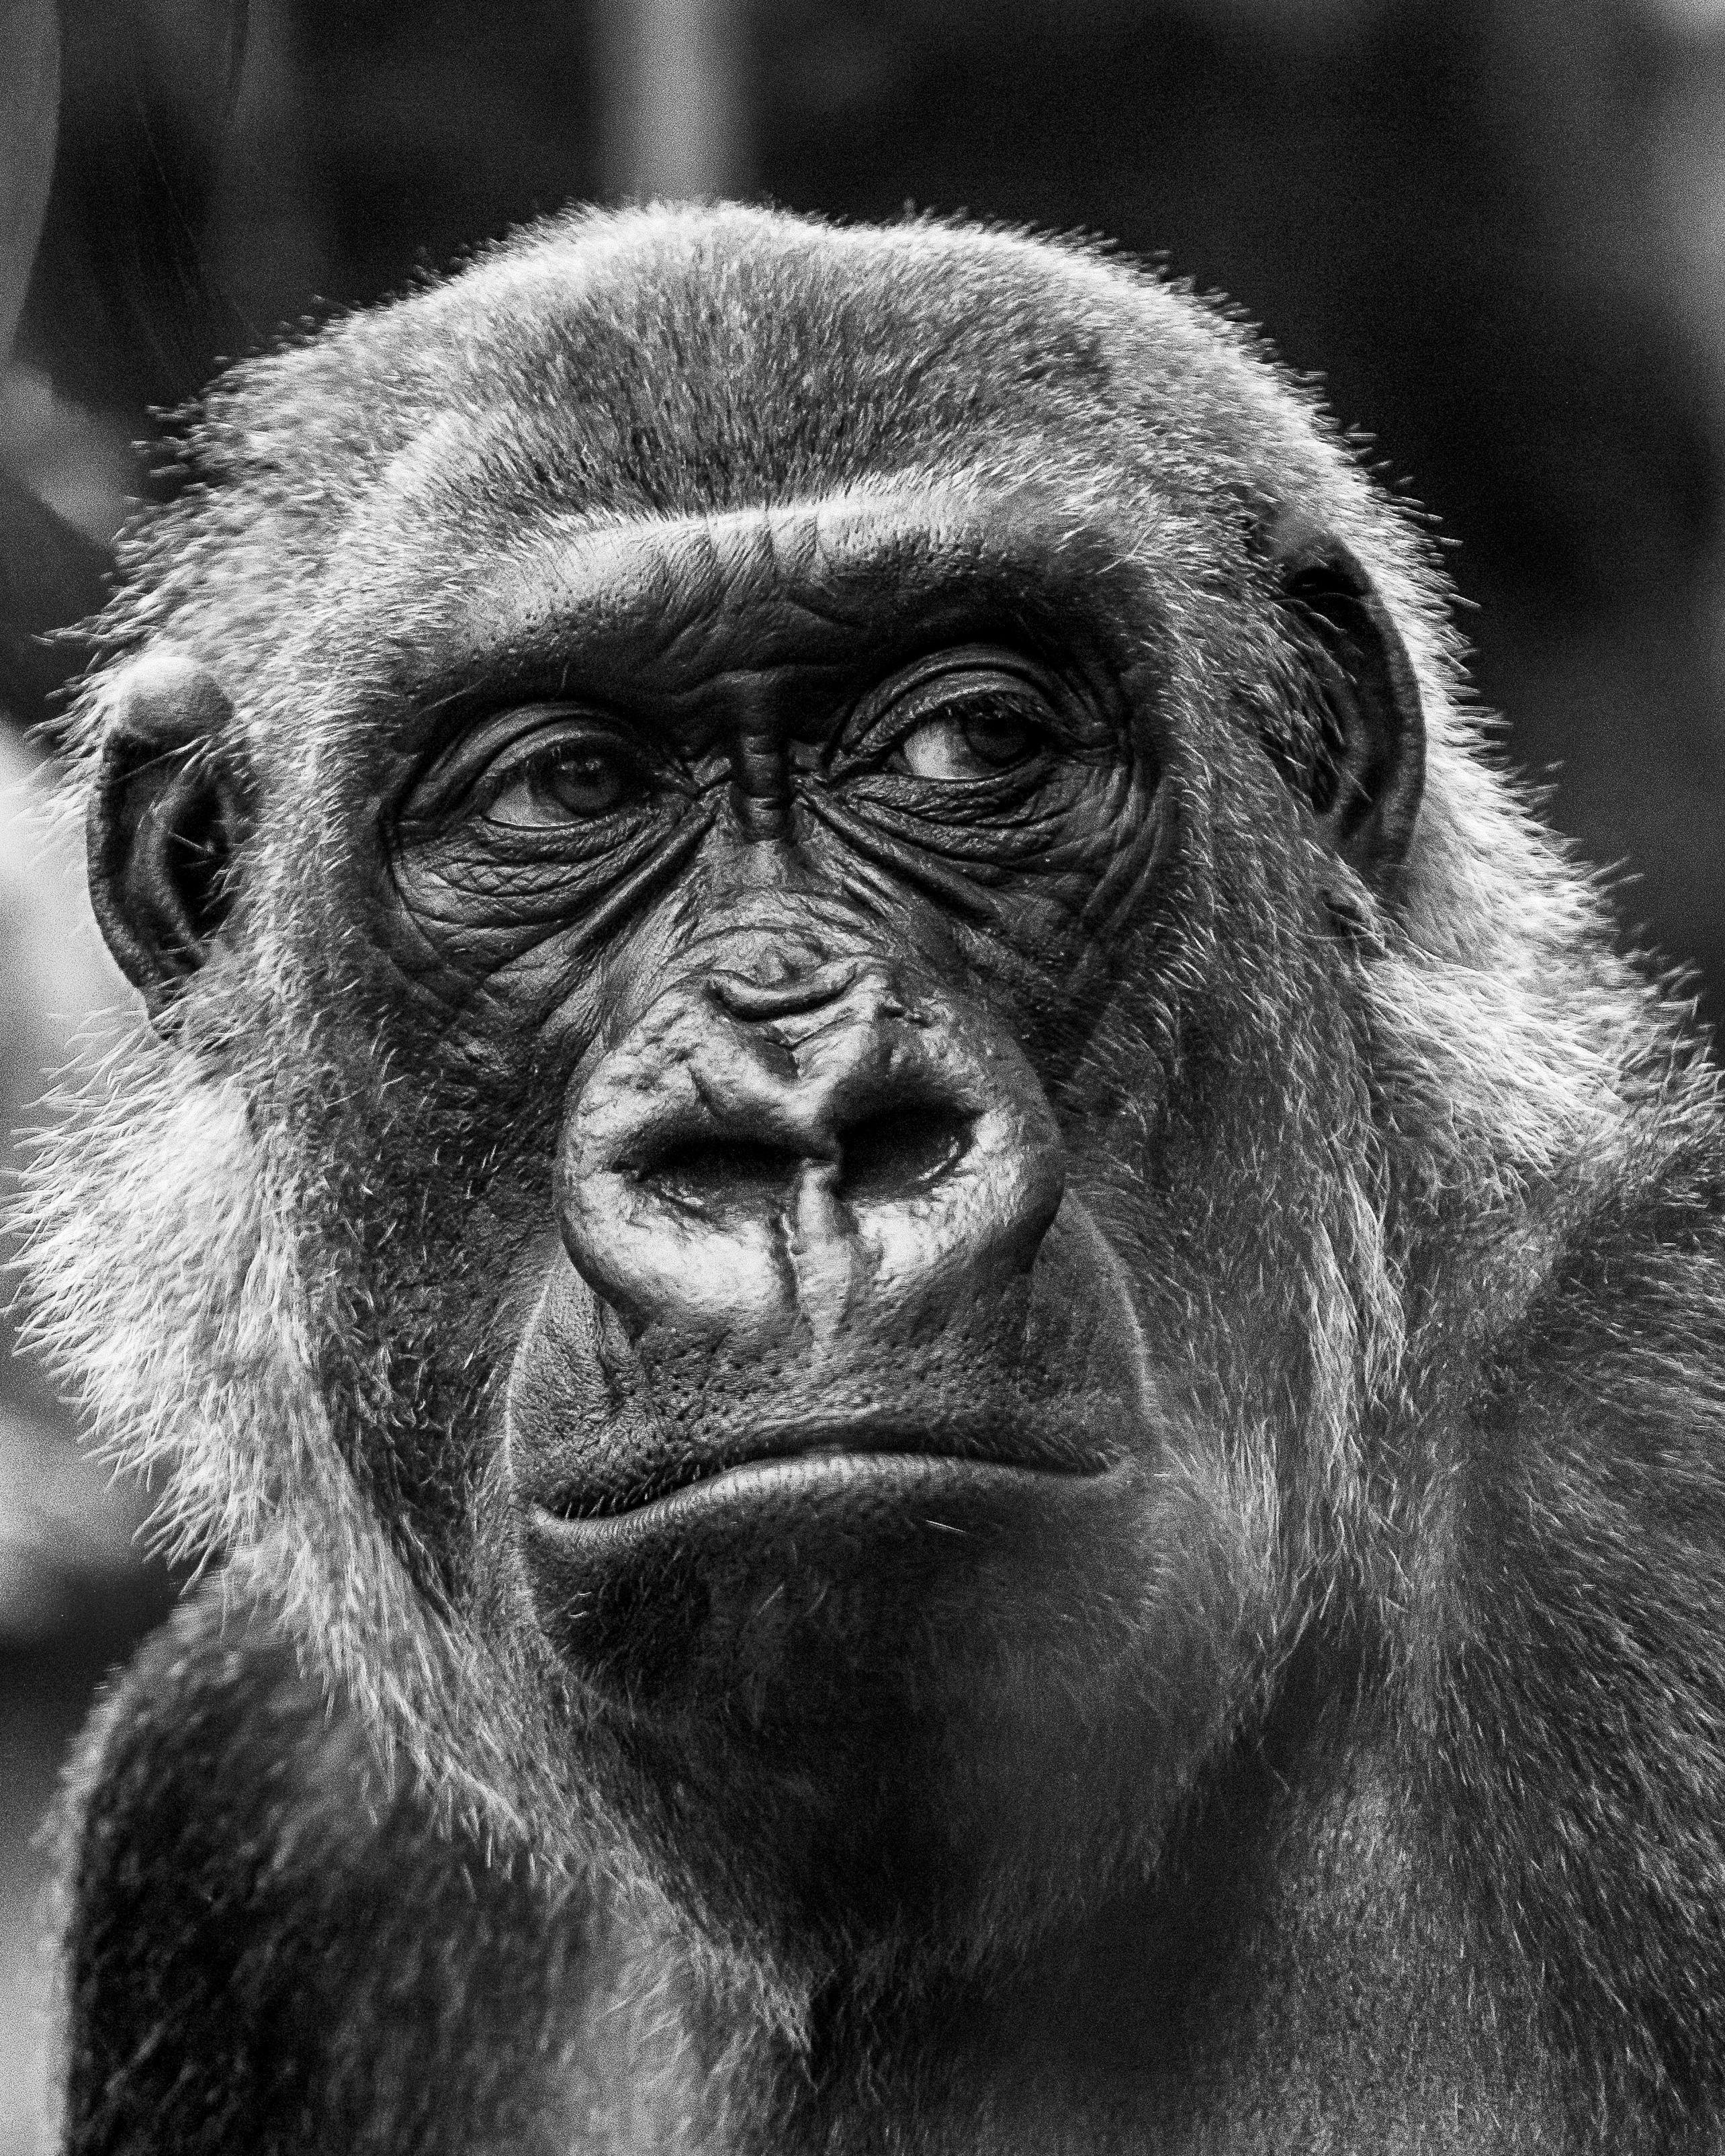 Ảnh đẹp con khỉ đột sẽ khiến bạn cảm thấy hoàn toàn thư giãn và được một chút tiêu khiển. Cùng khám phá bộ sưu tập ảnh đẹp về loài khỉ này để tìm thấy sự an lạc trong cuộc sống.